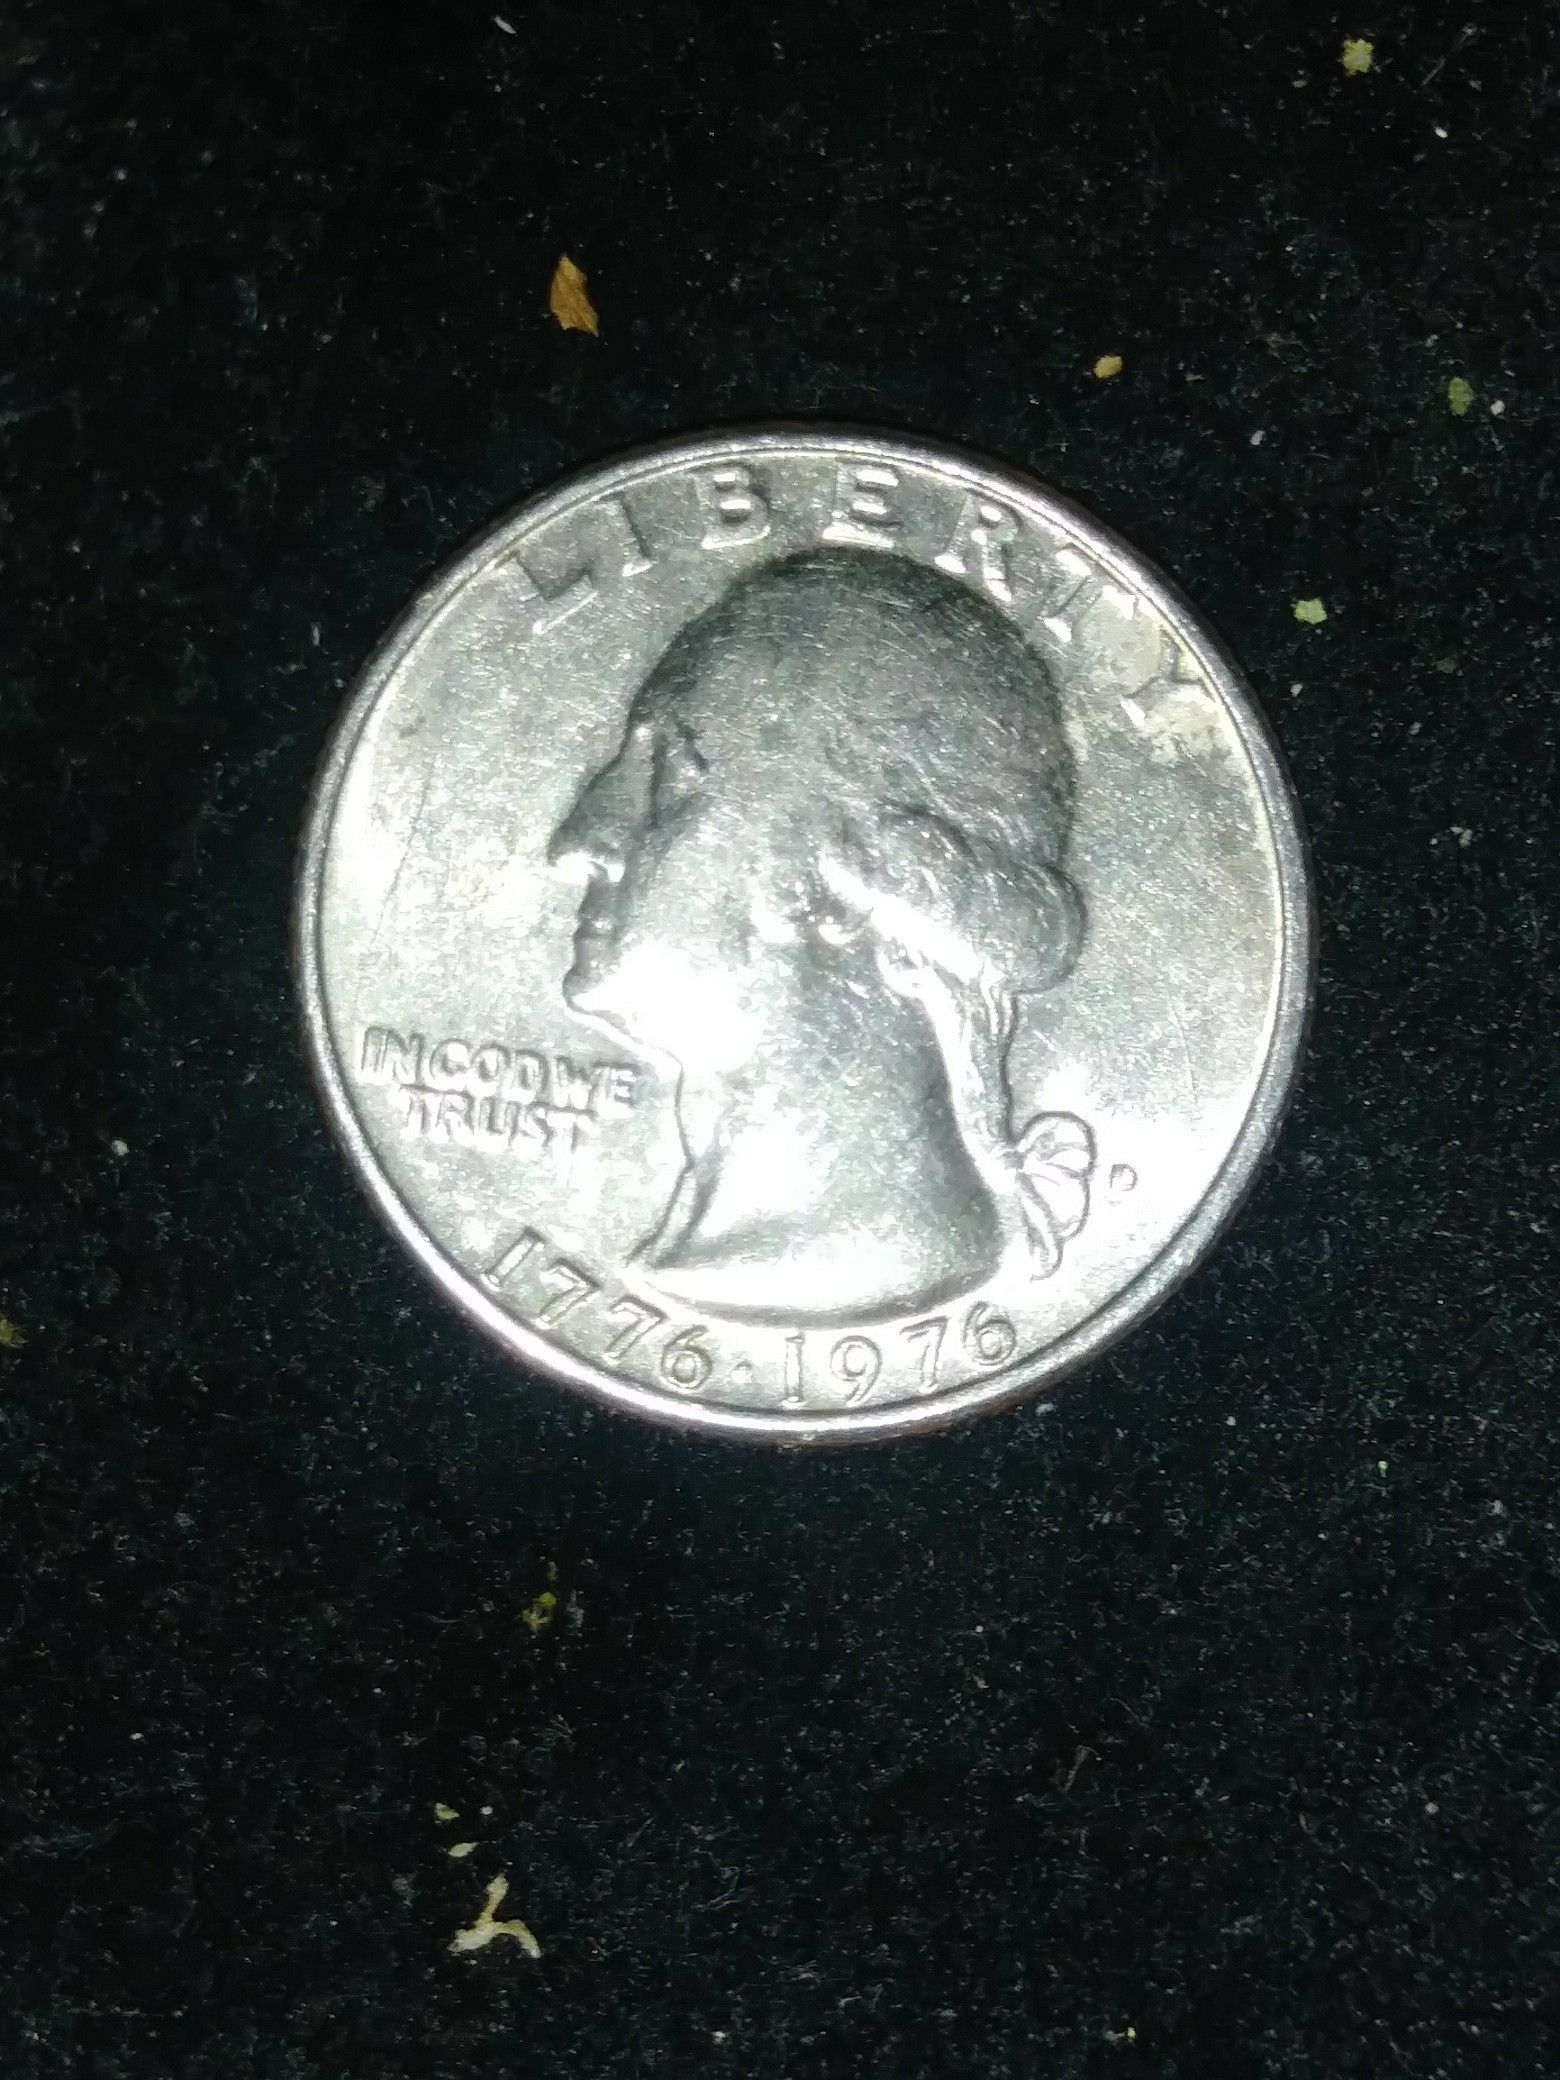 Rare bicentennial quarter no mint mark